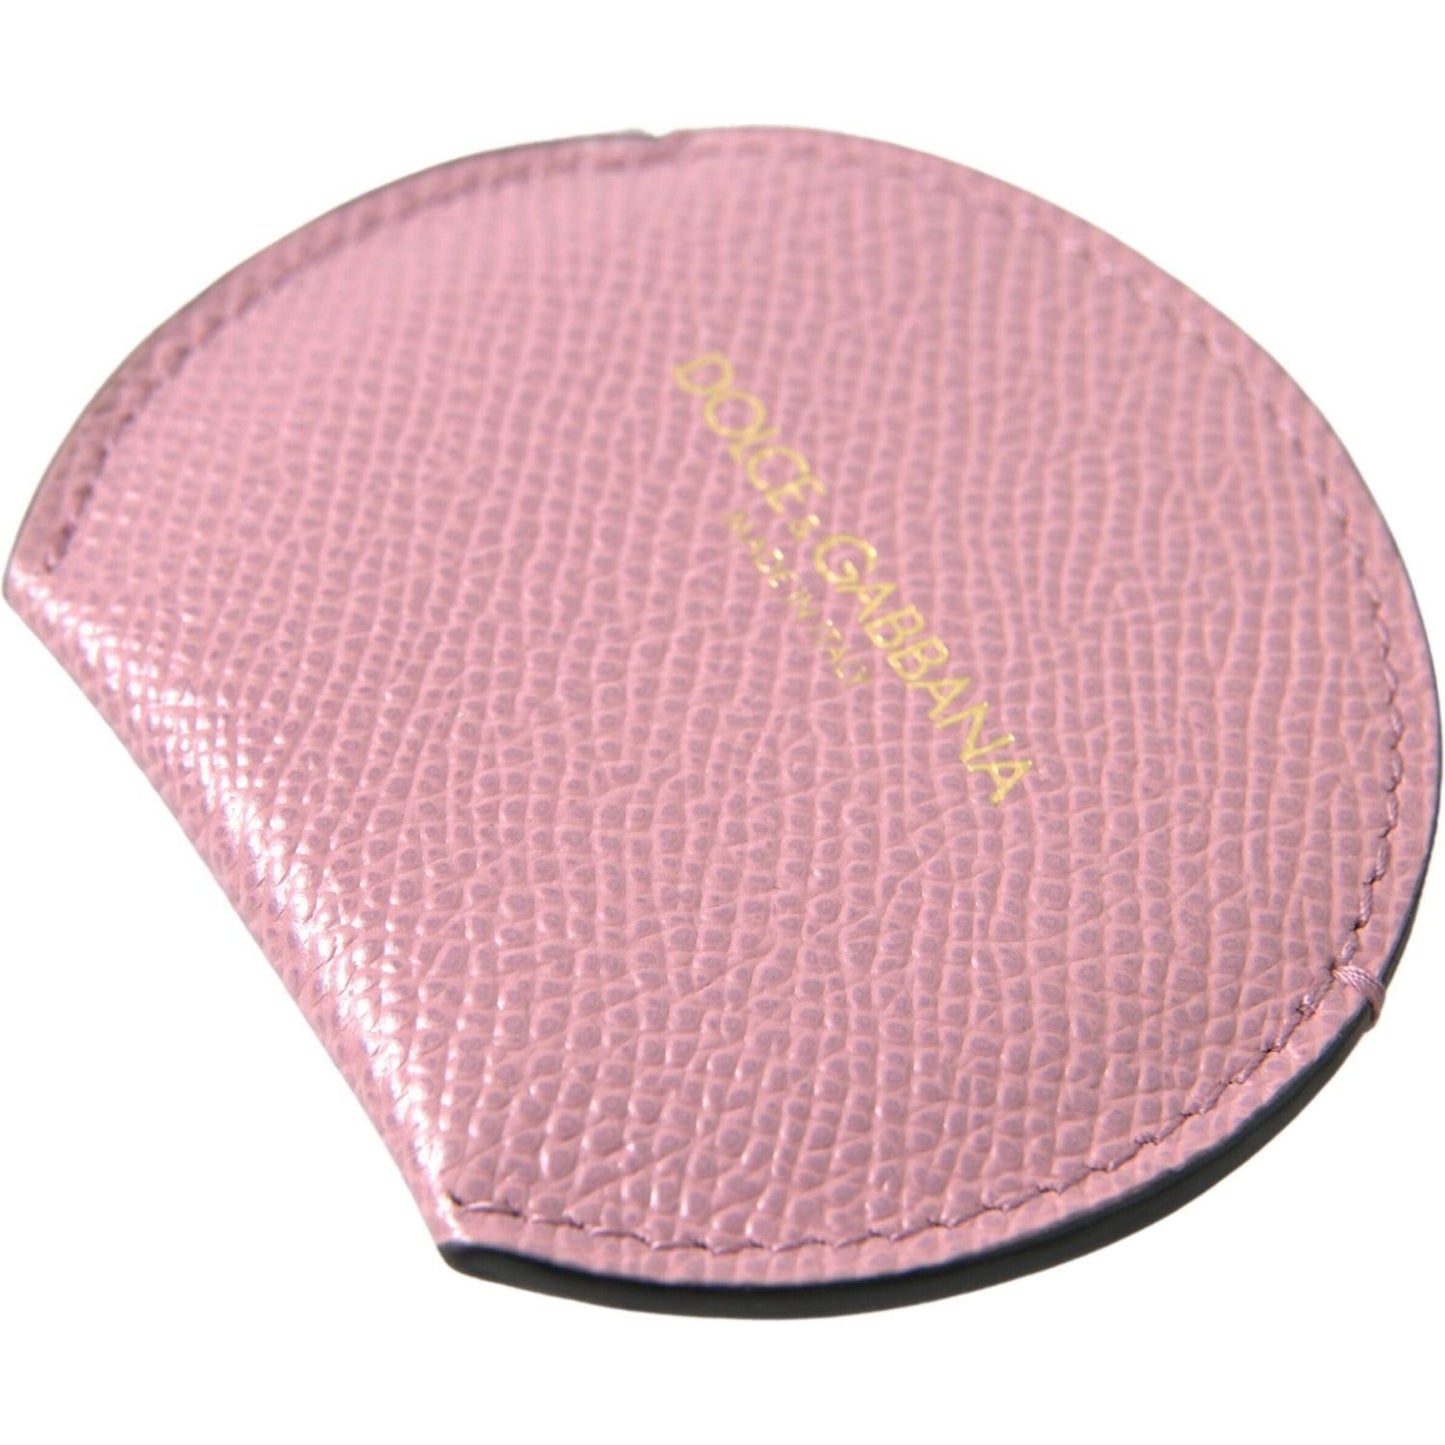 Dolce & Gabbana Elegant Pink Leather Hand Mirror Holder pink-calfskin-leather-round-logo-print-hand-mirror-holder-1